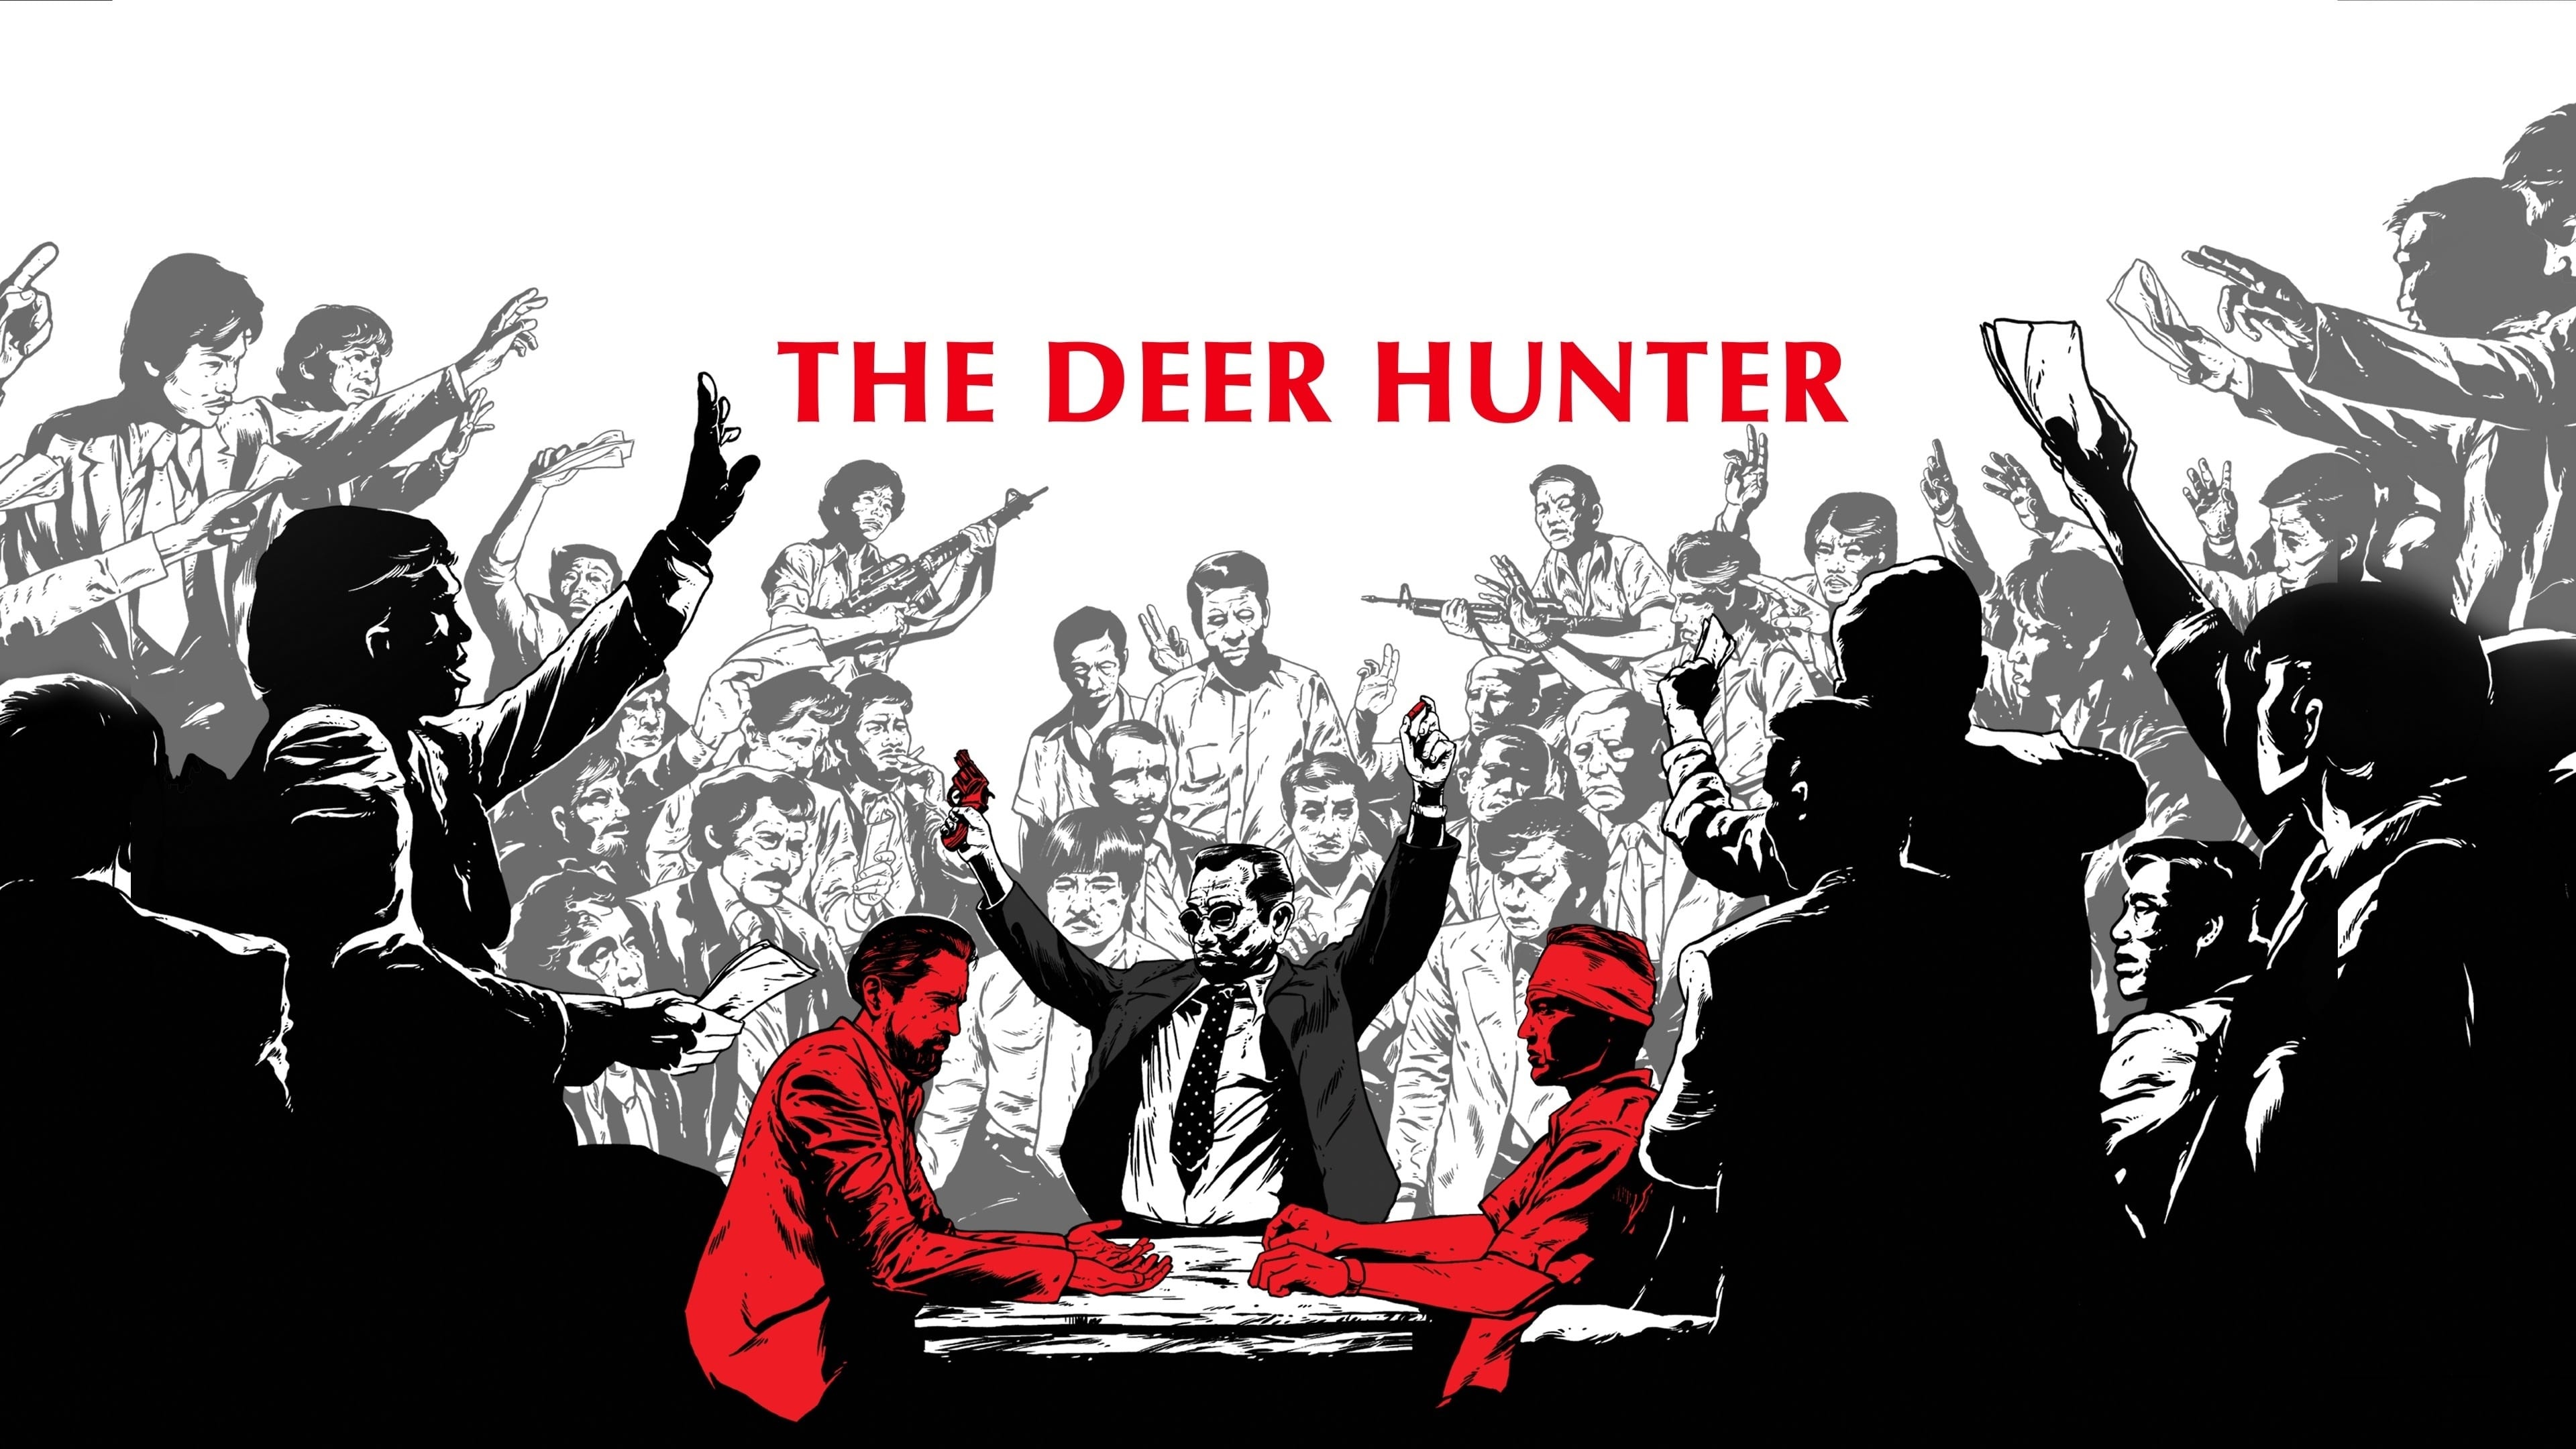 Movie database, The Deer Hunter, Film information, Casting details, 3840x2160 4K Desktop